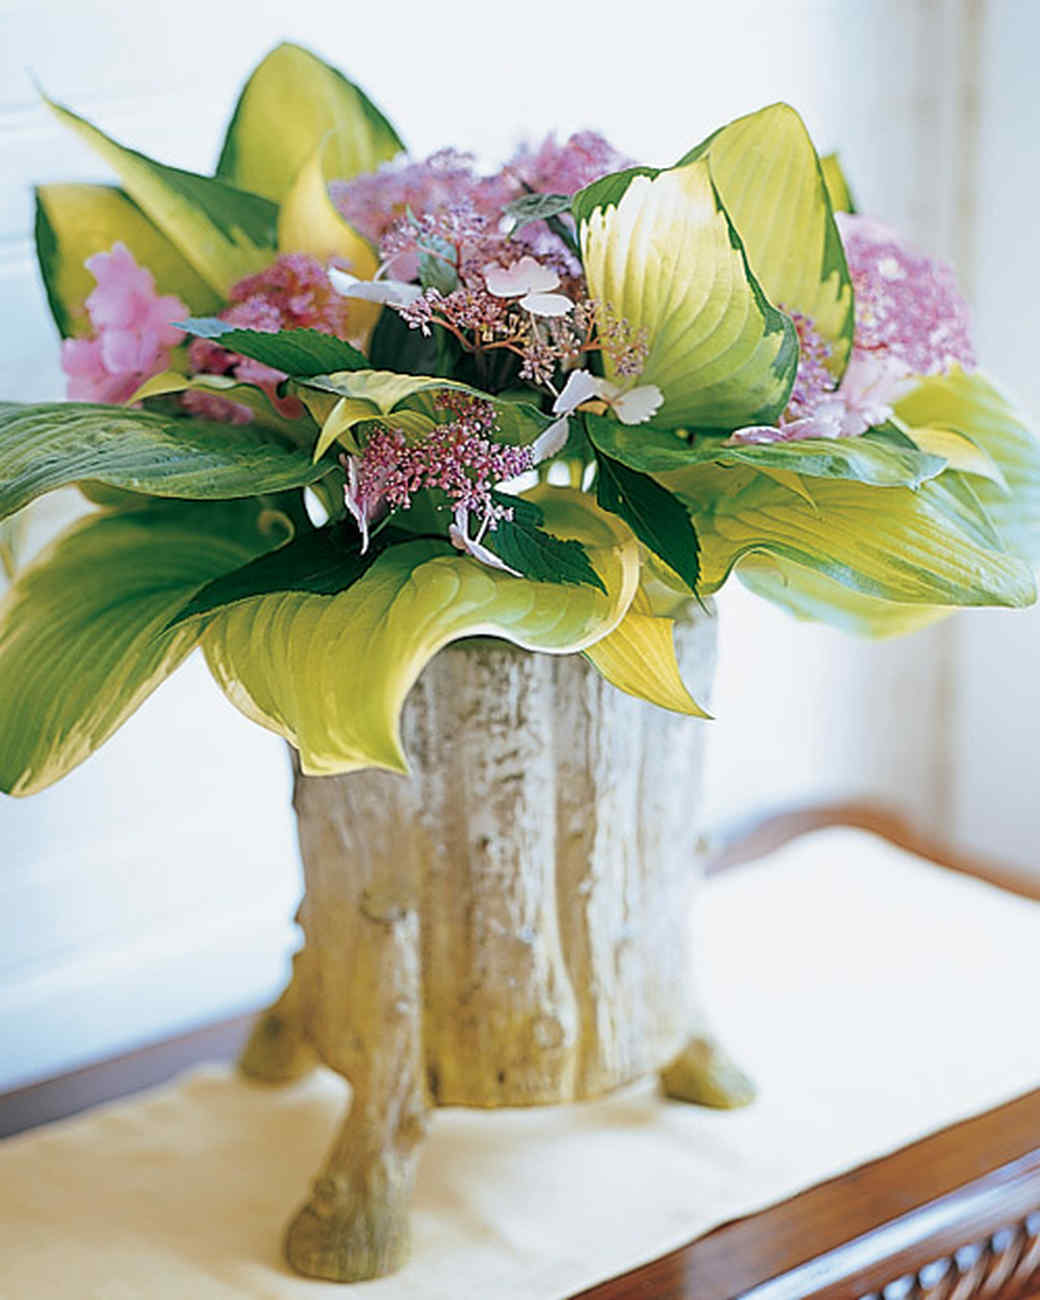 Hosta and hydrangea flower arrangement in a vase.